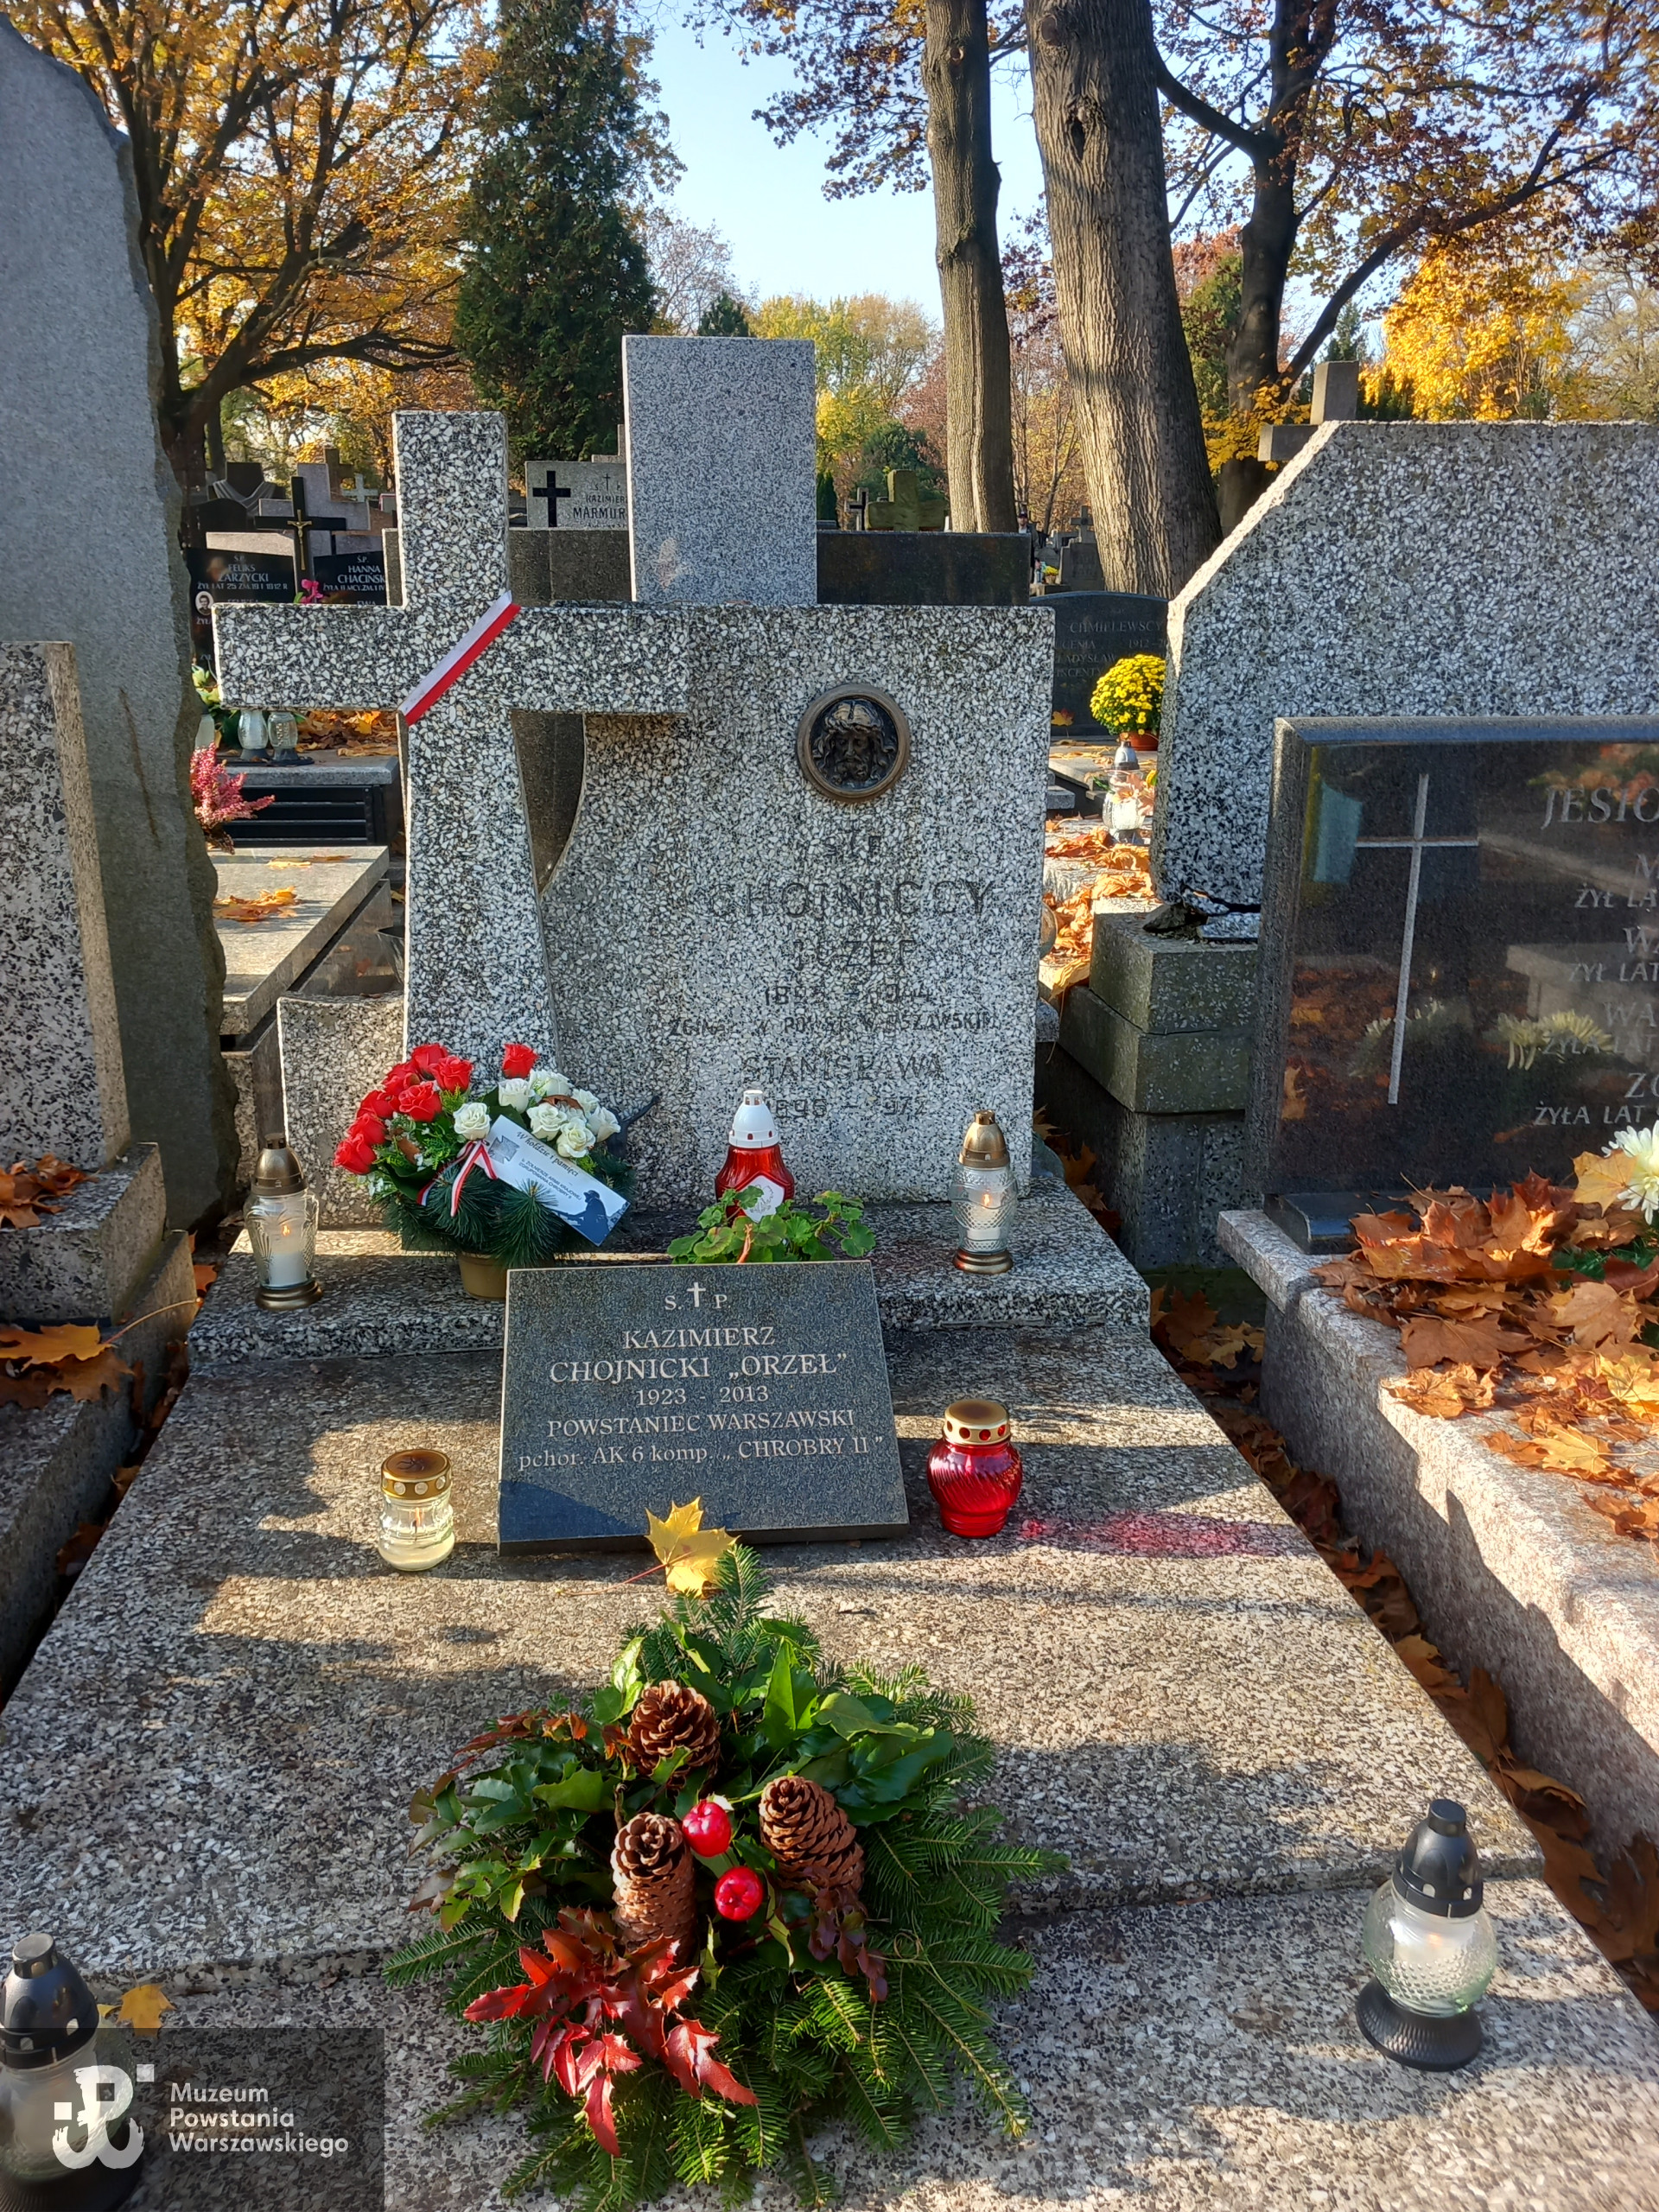  Cmentarz Bródnowski w Warszawie, kwatera 31G, rząd 3, grób 4. Fot. z zasobu Działu Historycznego MPW - projekt "Baza Grobów Powstańczych".